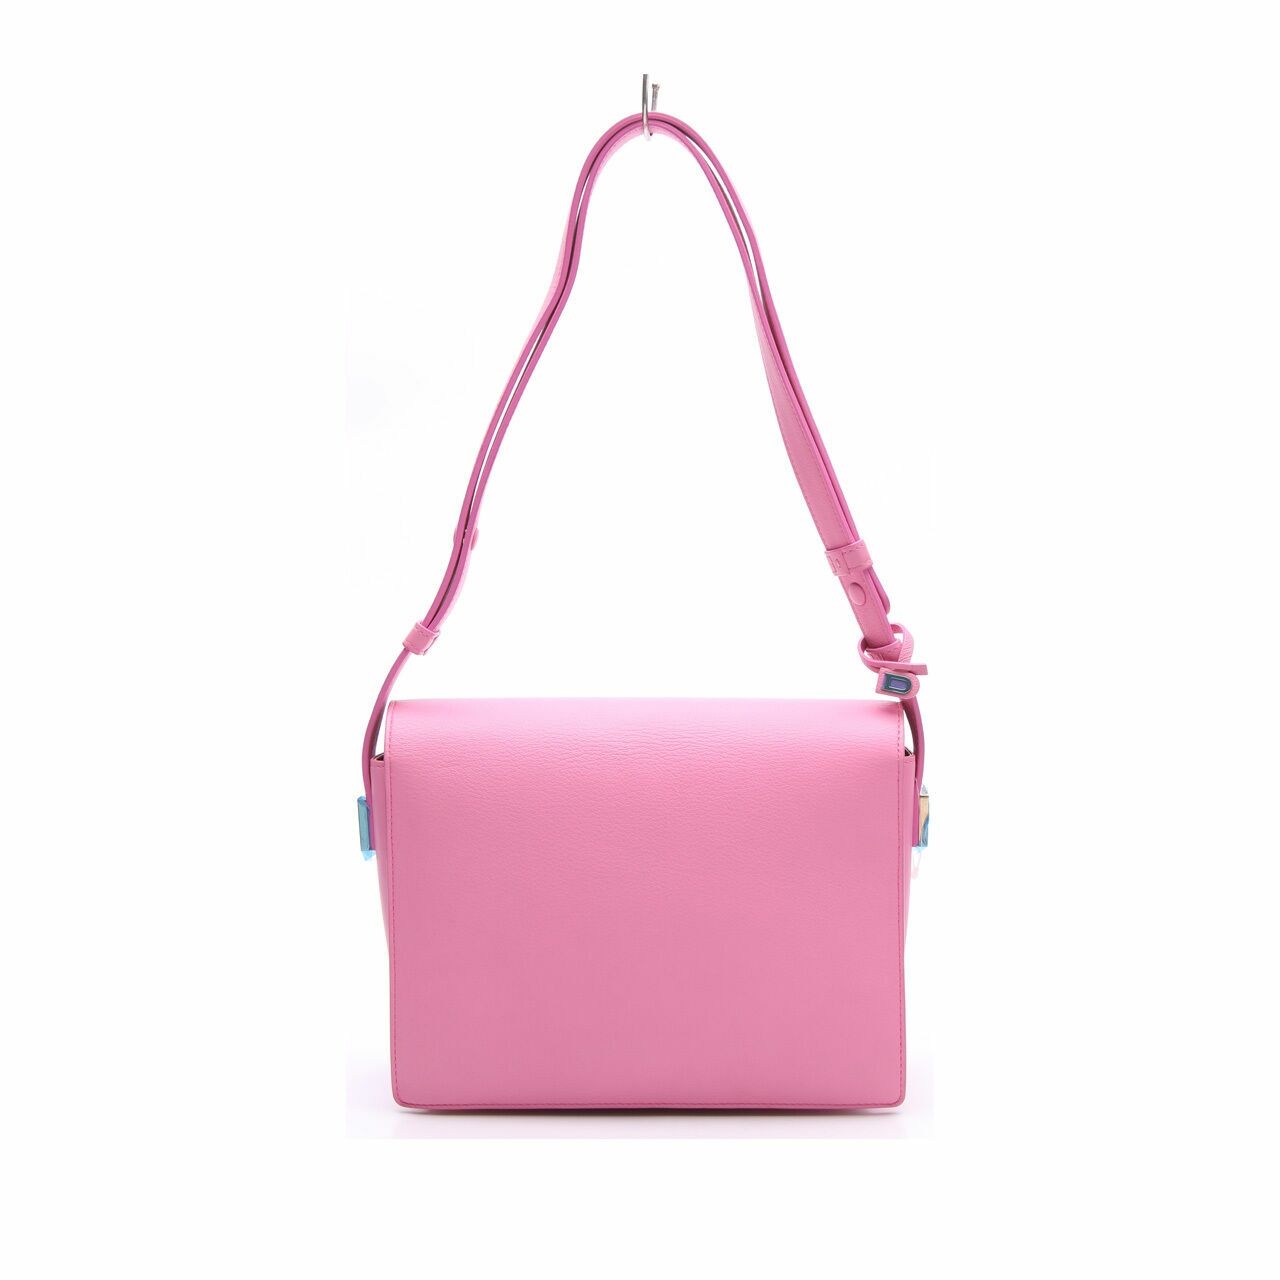 Delvaux Madam Shoulder Bag pink leather Sling Bag